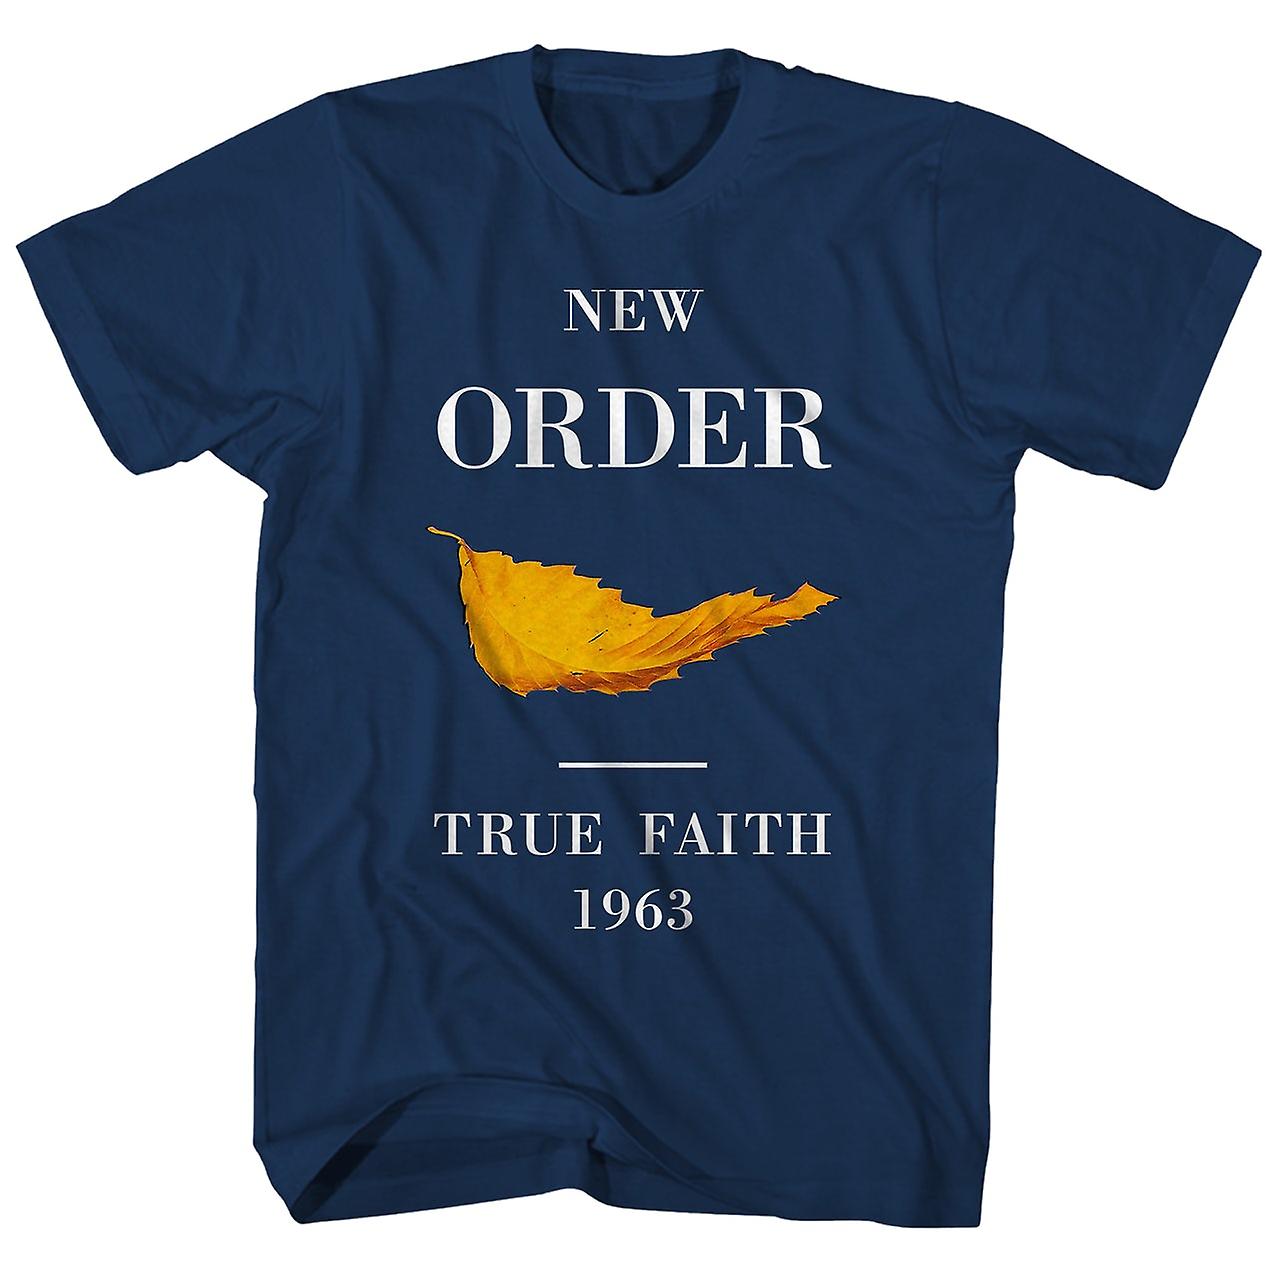 NEW ORDER - TRUE FAITH